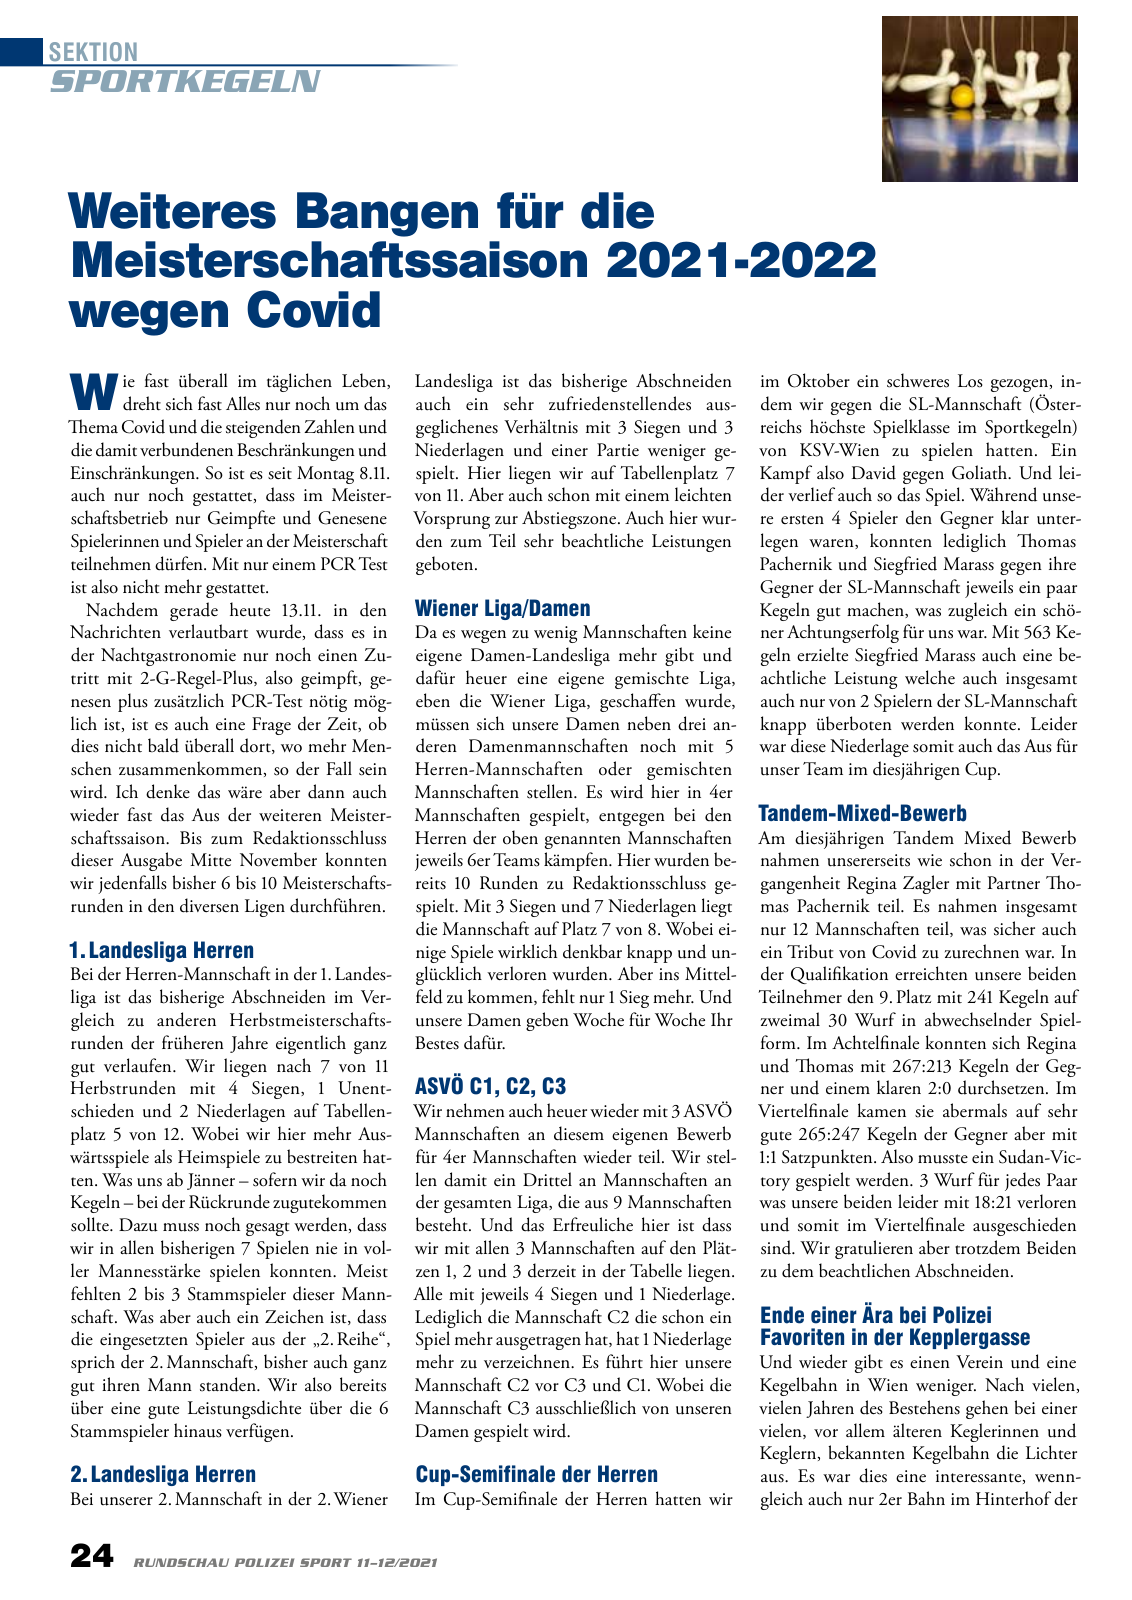 Vorschau Rundschau Polizei Sport 11-12/2021 Seite 24